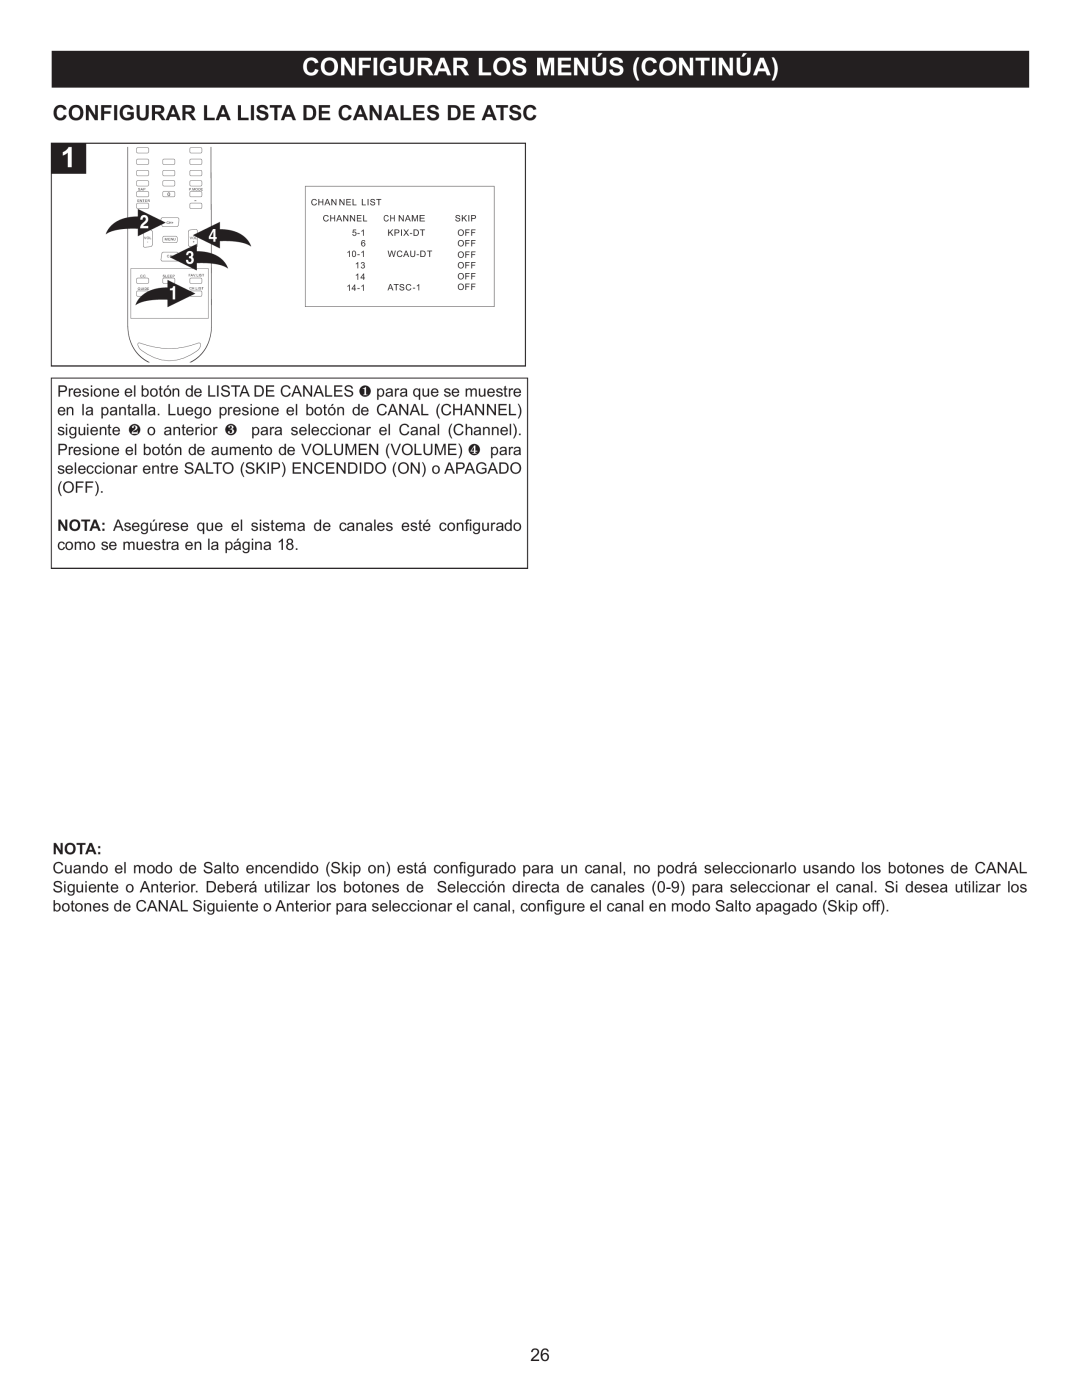 Memorex MT2028D-BLK manual Configurar La Lista De Canales De Atsc 